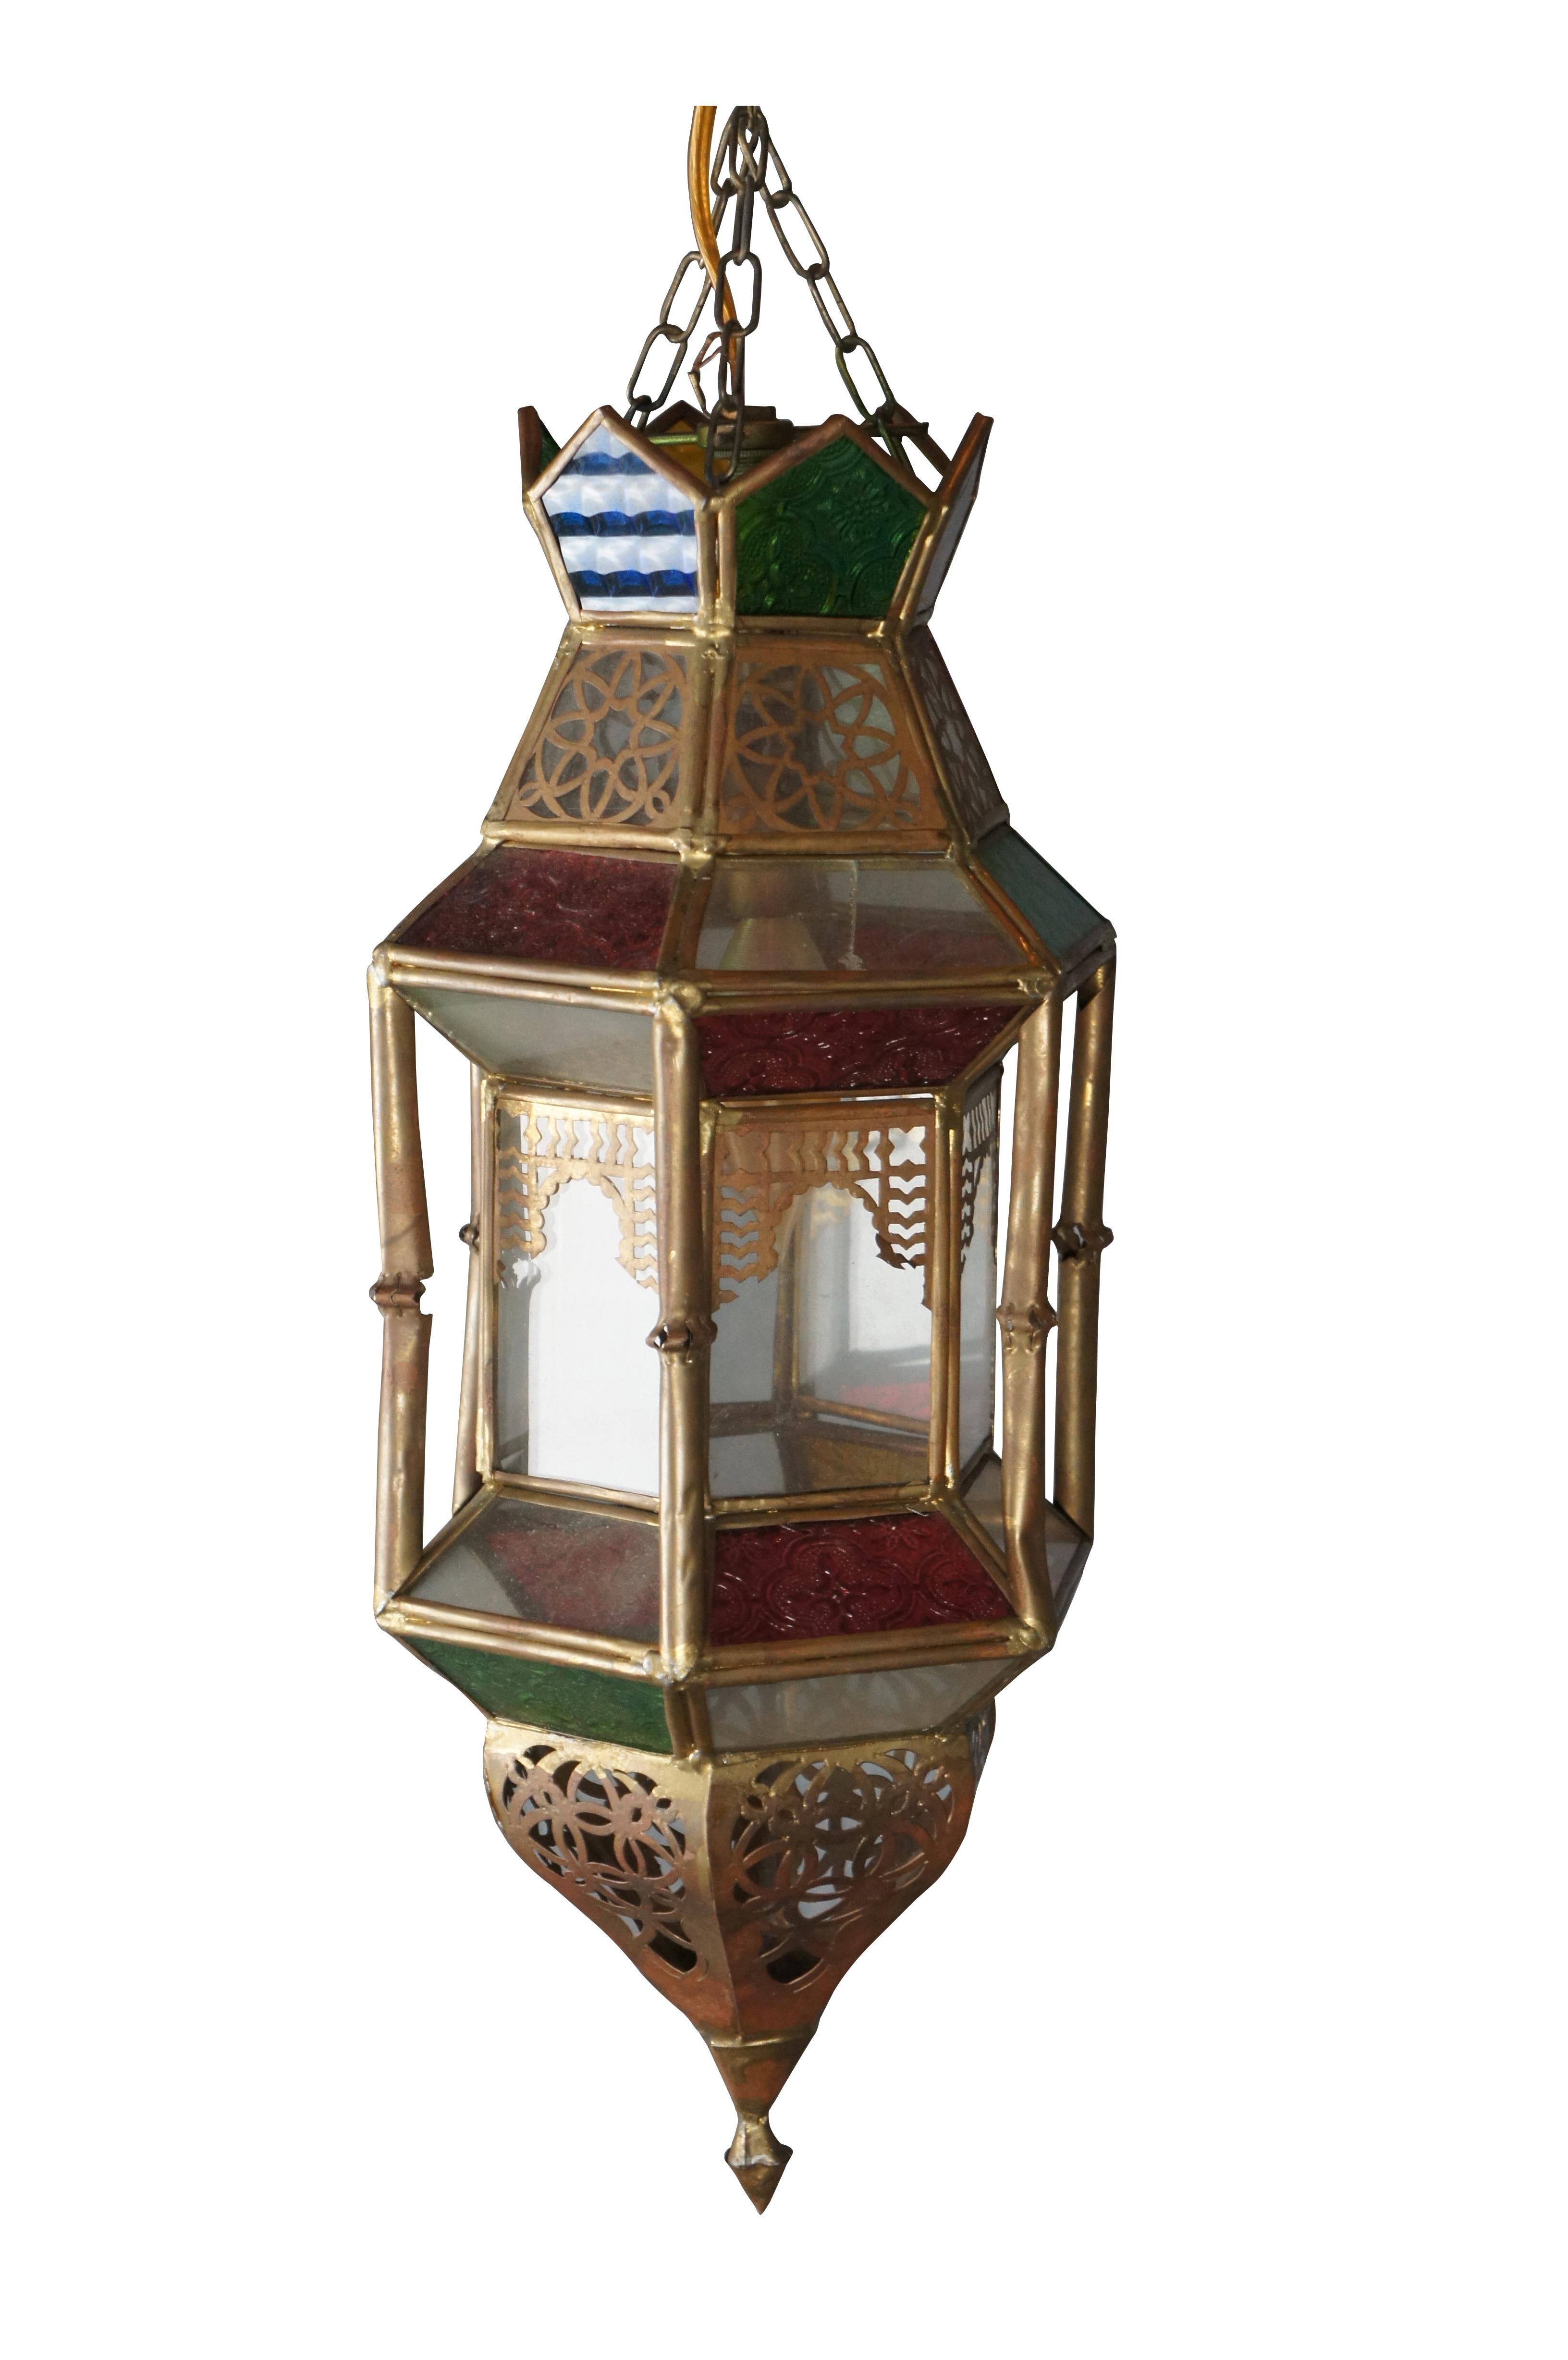 Fin du 20e siècle Lanterne marocaine / mauresque. Fabriqué en laiton avec des panneaux percés/réticulés et du verre de scorie colofrul. Une belle lampe suspendue ou une lampe swag pour n'importe quel environnement.


Dimensions :
7